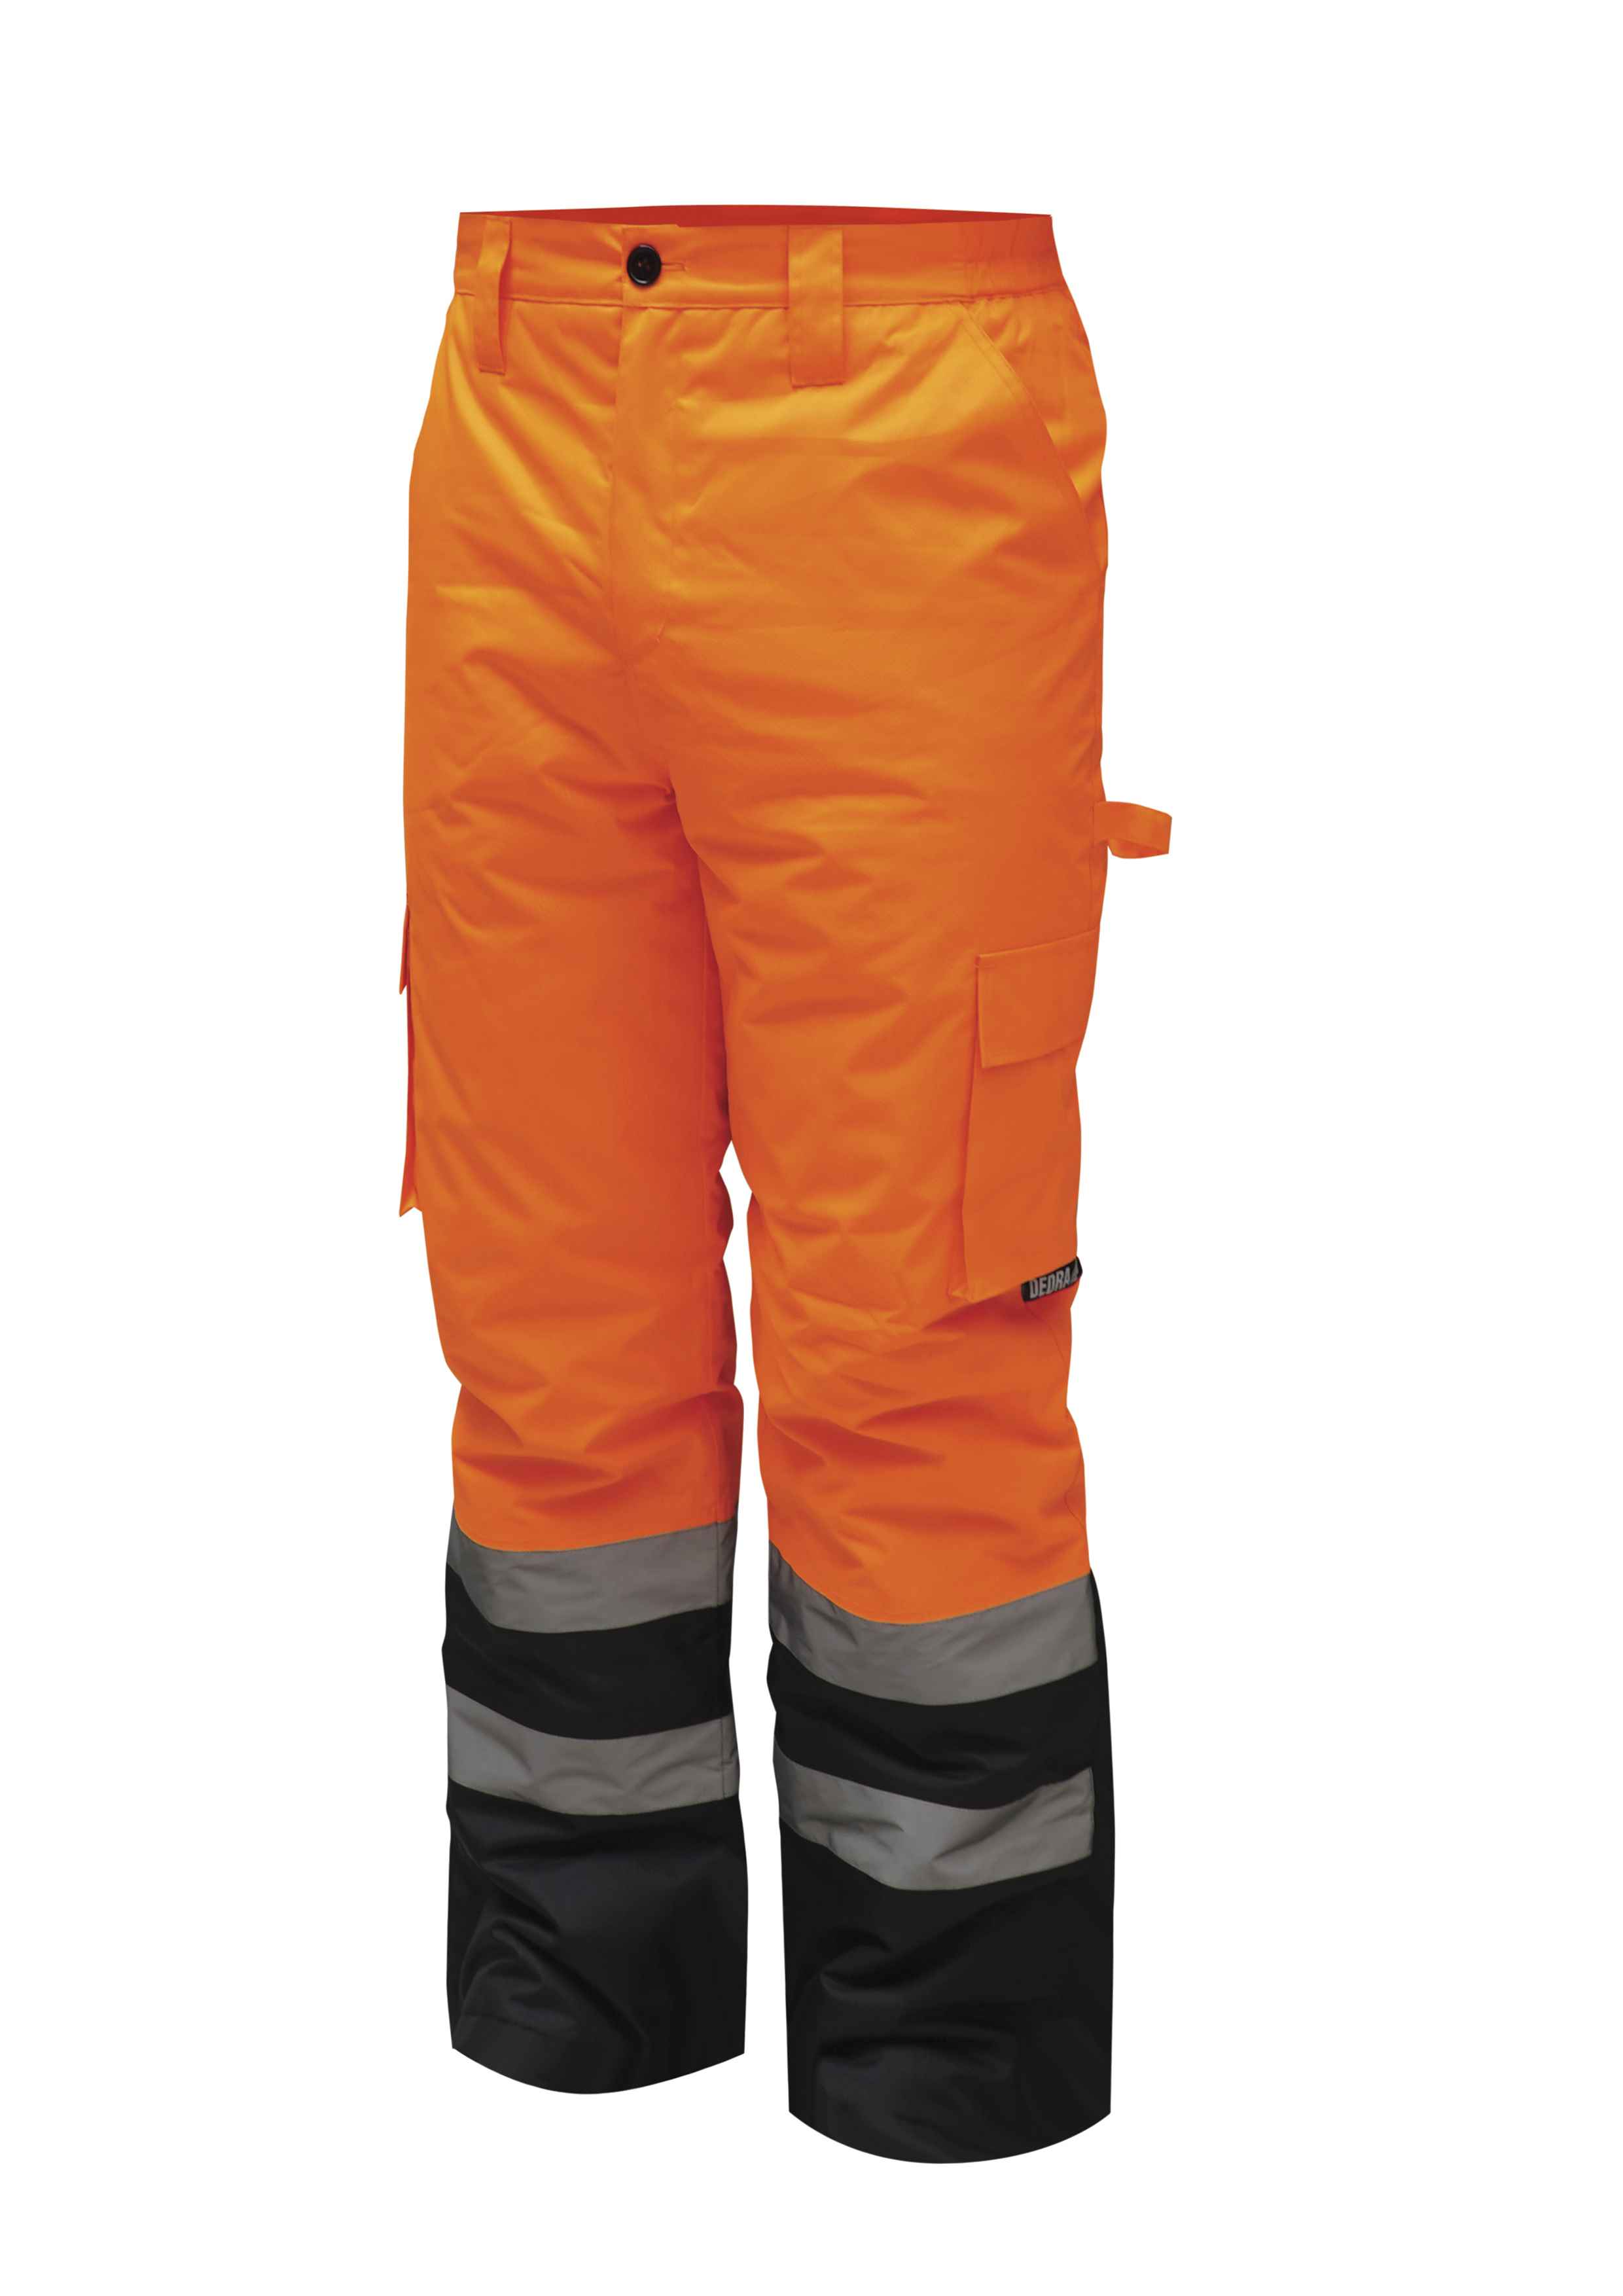 Reflexní zateplené kalhoty vel. L, oranžové DEDRA BH80SP2-L + Dárek, servis bez starostí v hodnotě 300Kč